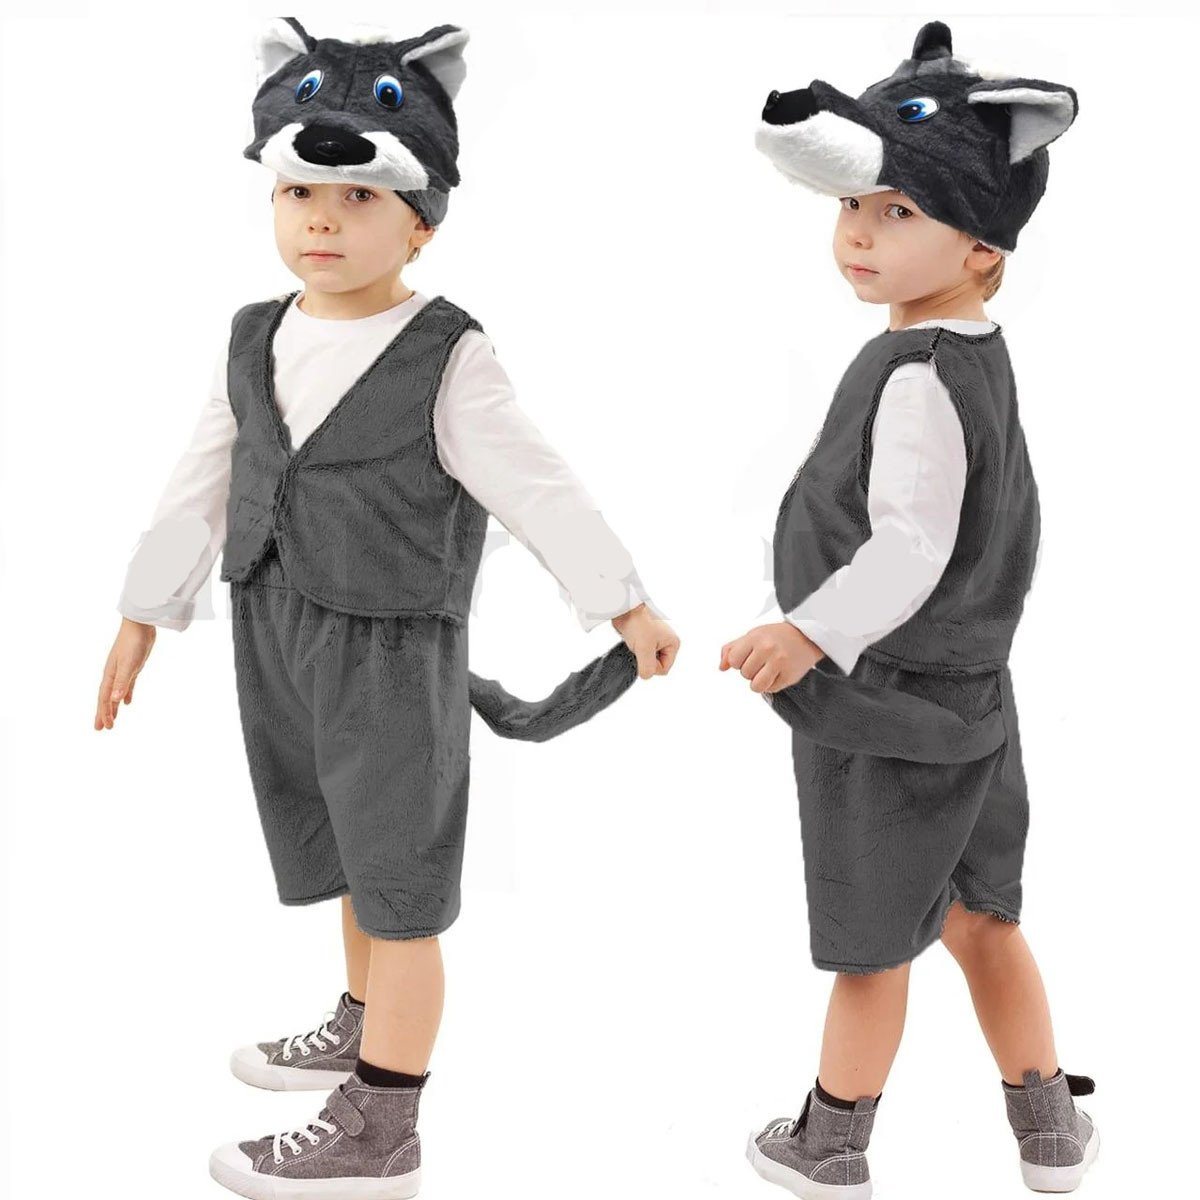 Костюм детский карнавальный Волк жилетка шорты с хвостом и шапка серый, фото 1